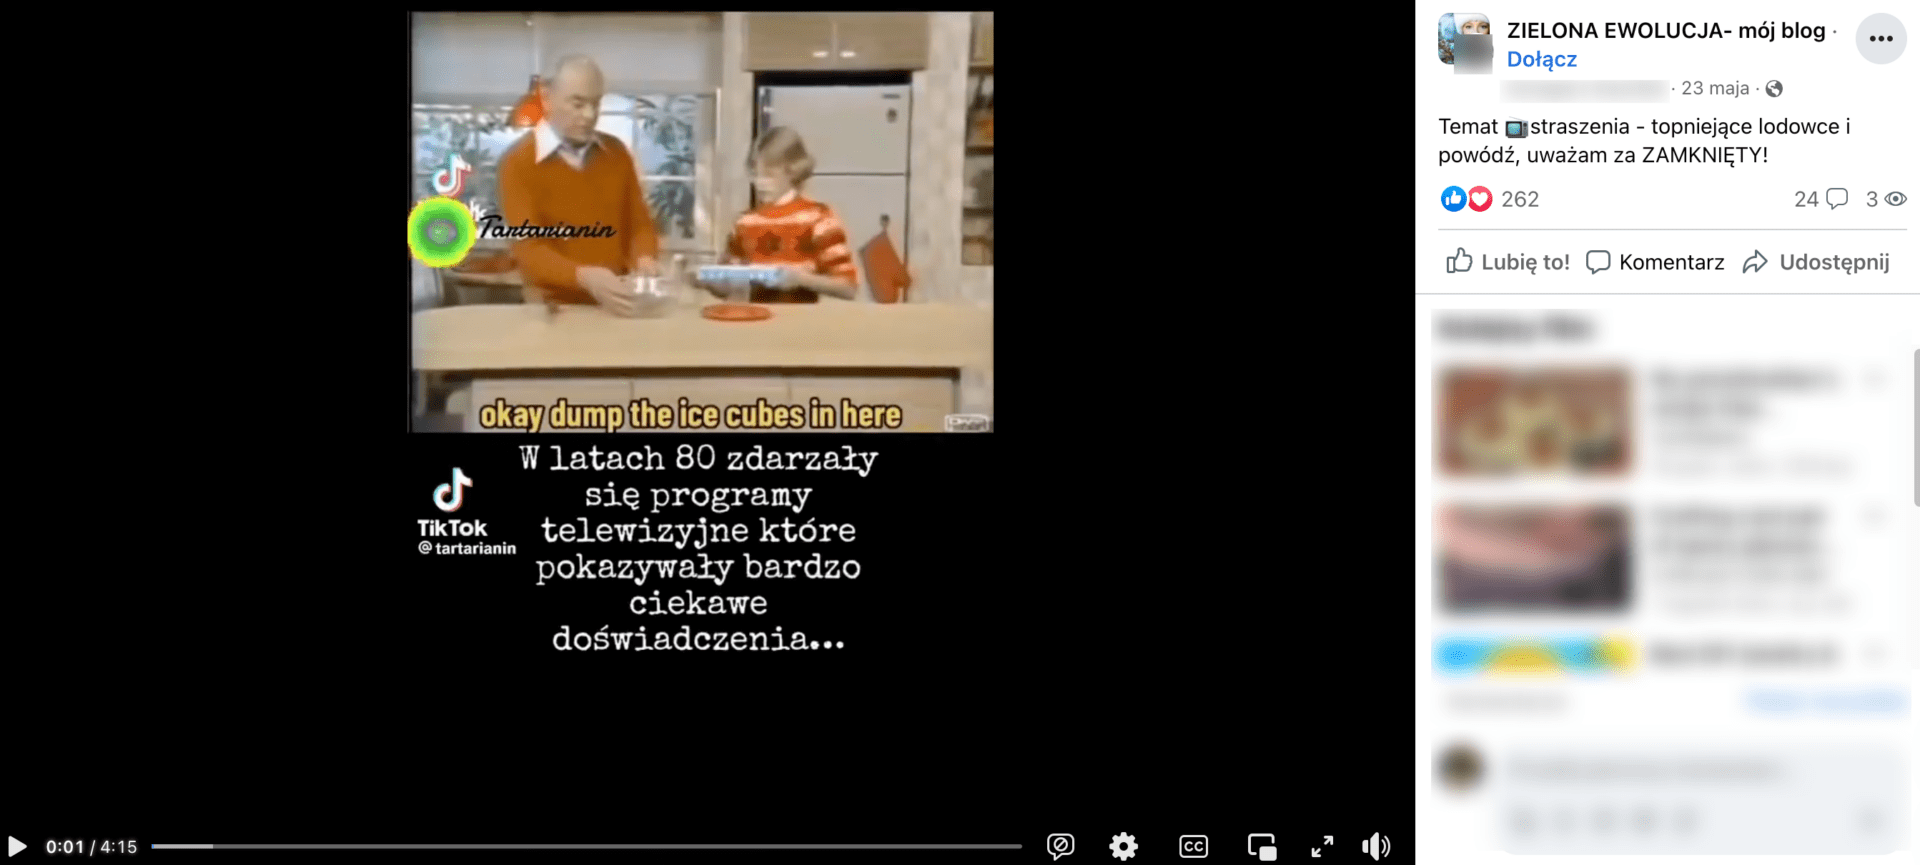 Zrzut ekranu posta, w którym zamieszczono omawiane nagranie. Widoczni są mężczyzna w pomarańczowym swetrze i chłopiec w pomarańczowym swetrze z wzorami.